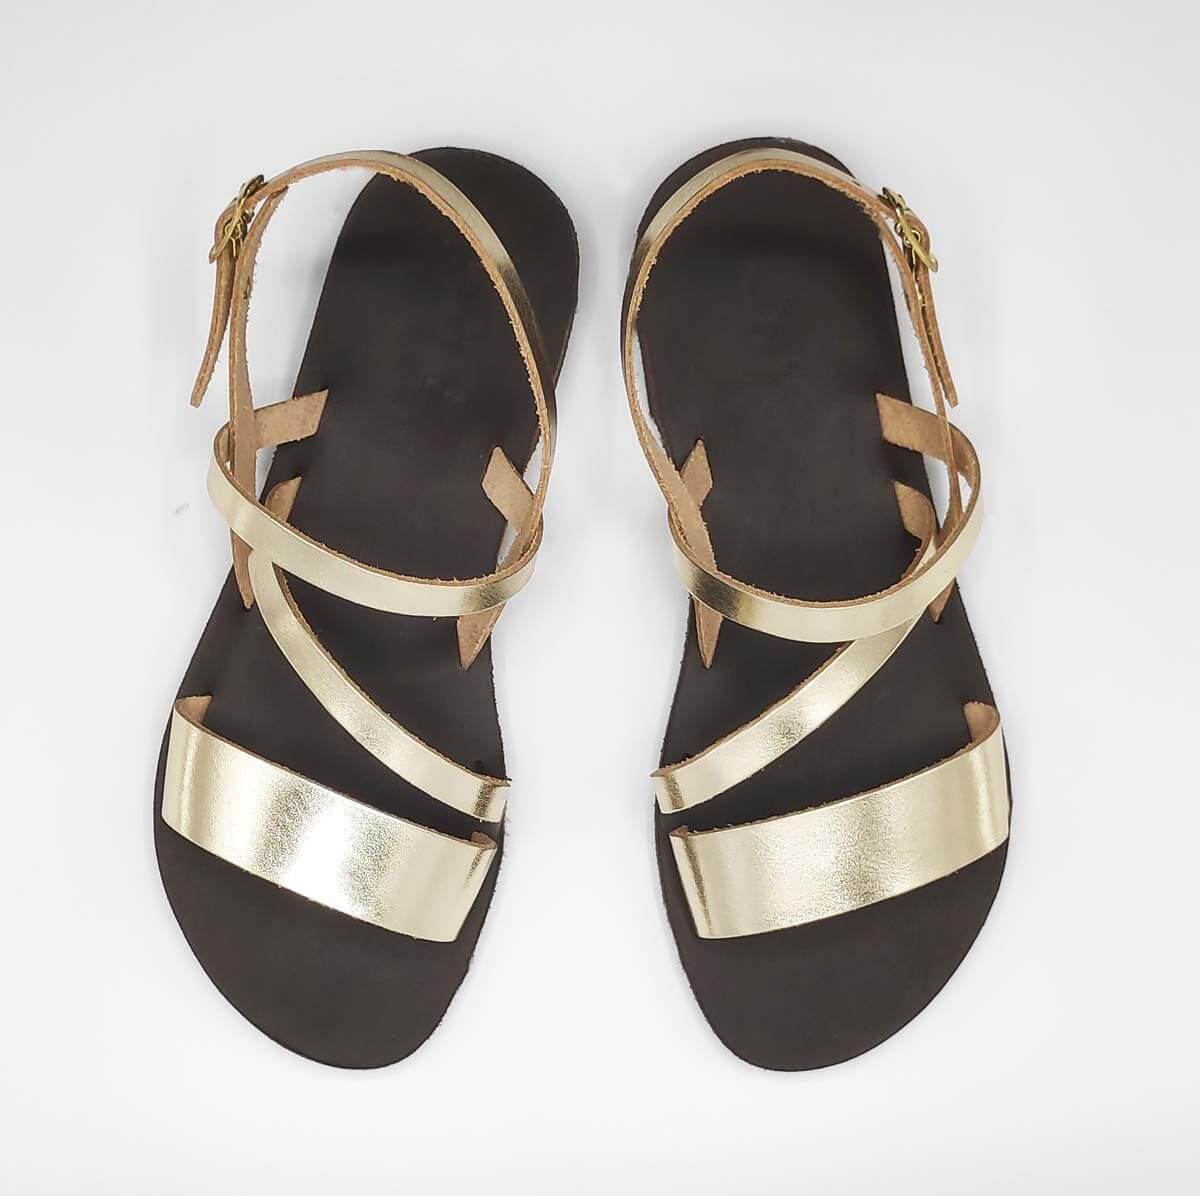 Kini Handmade Hellenik Greek Style Sandal Leather Sandals | Pagonis ...